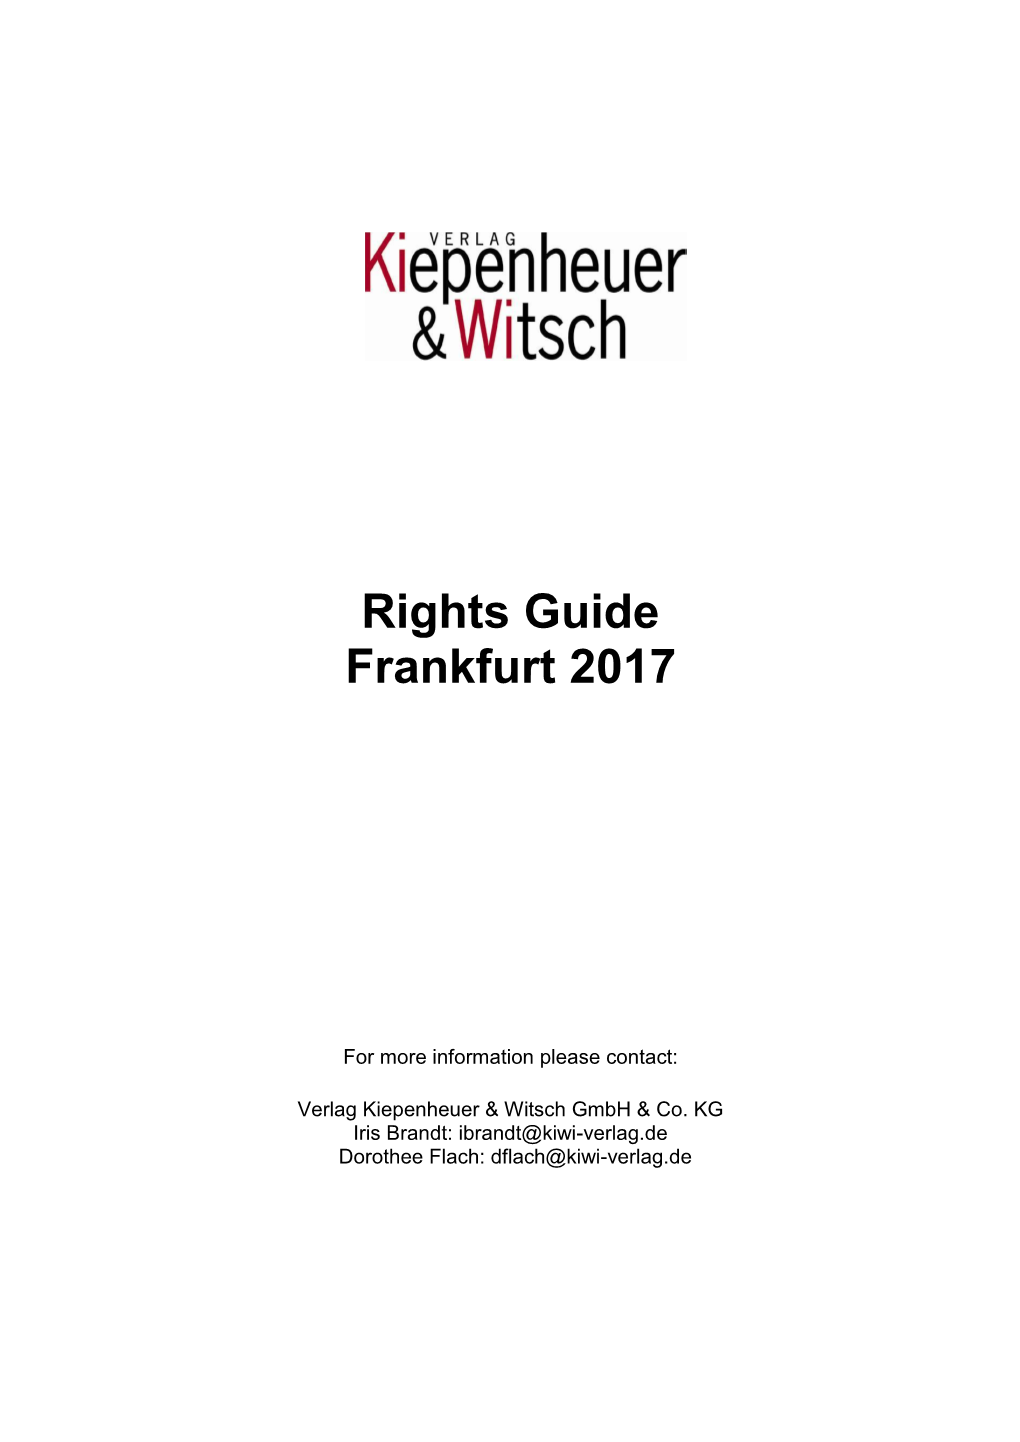 Rights Guide Frankfurt 2017